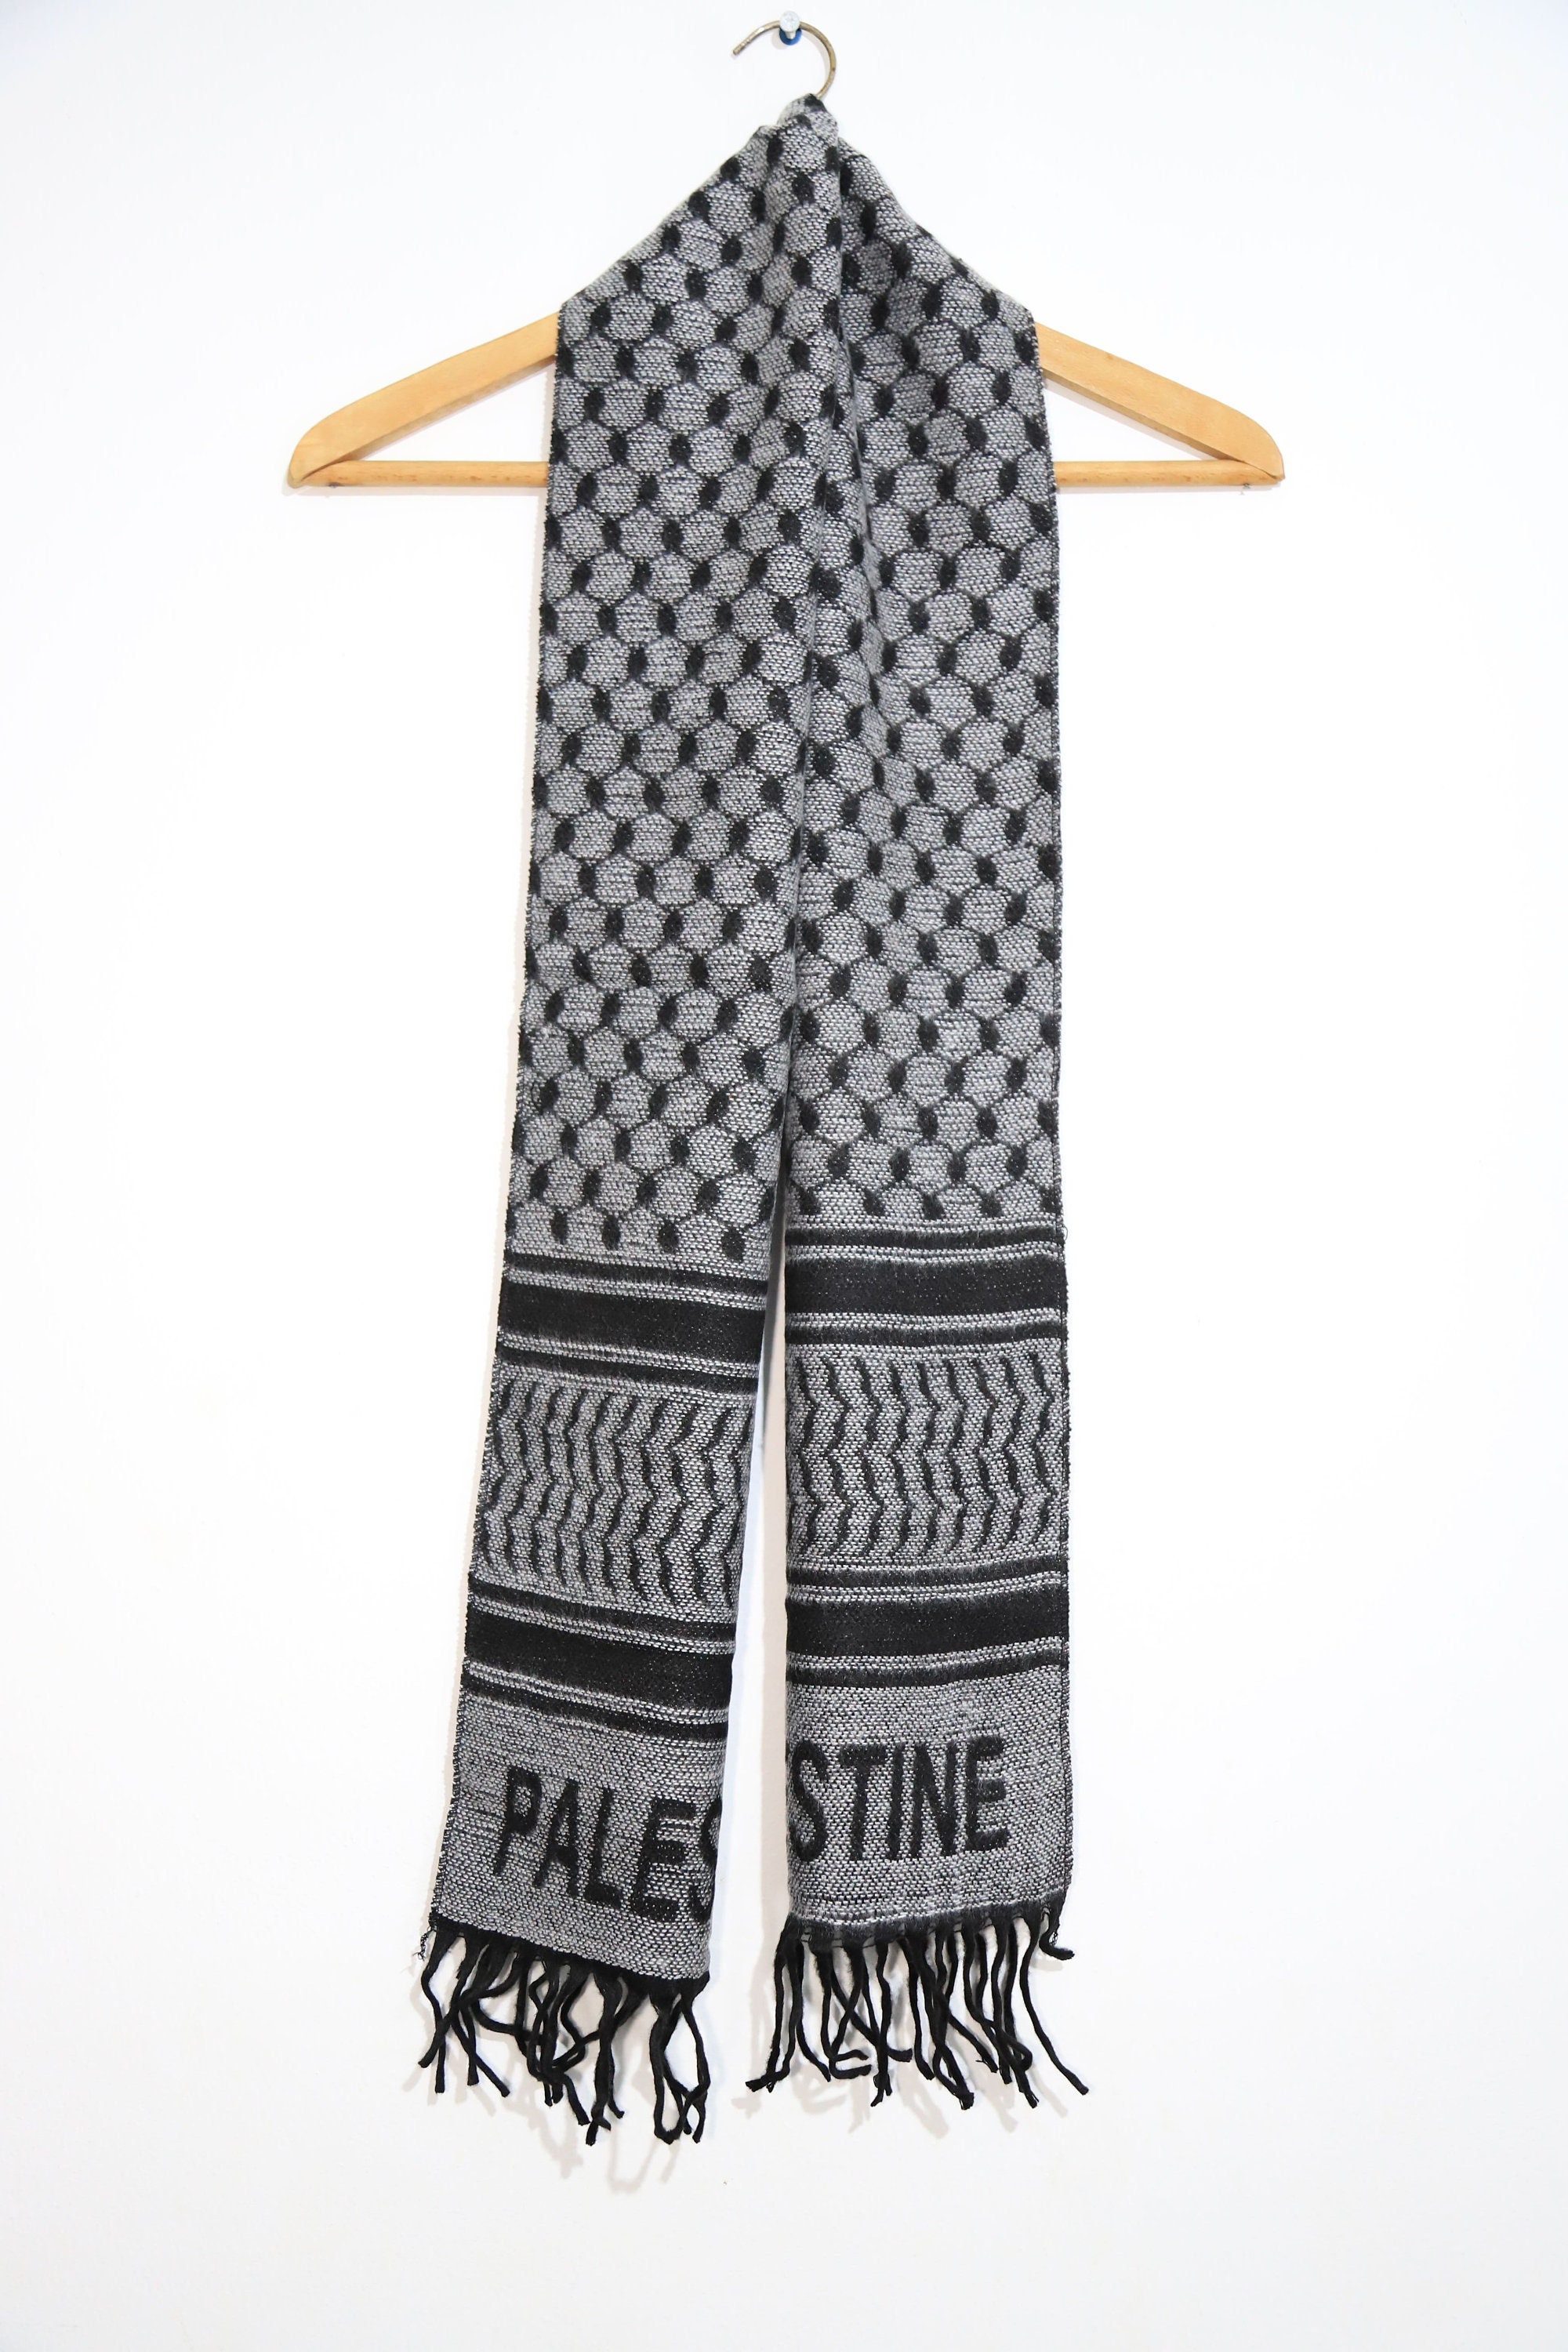 Écharpe palestinienne aux couleurs du drapeau et du keffieh